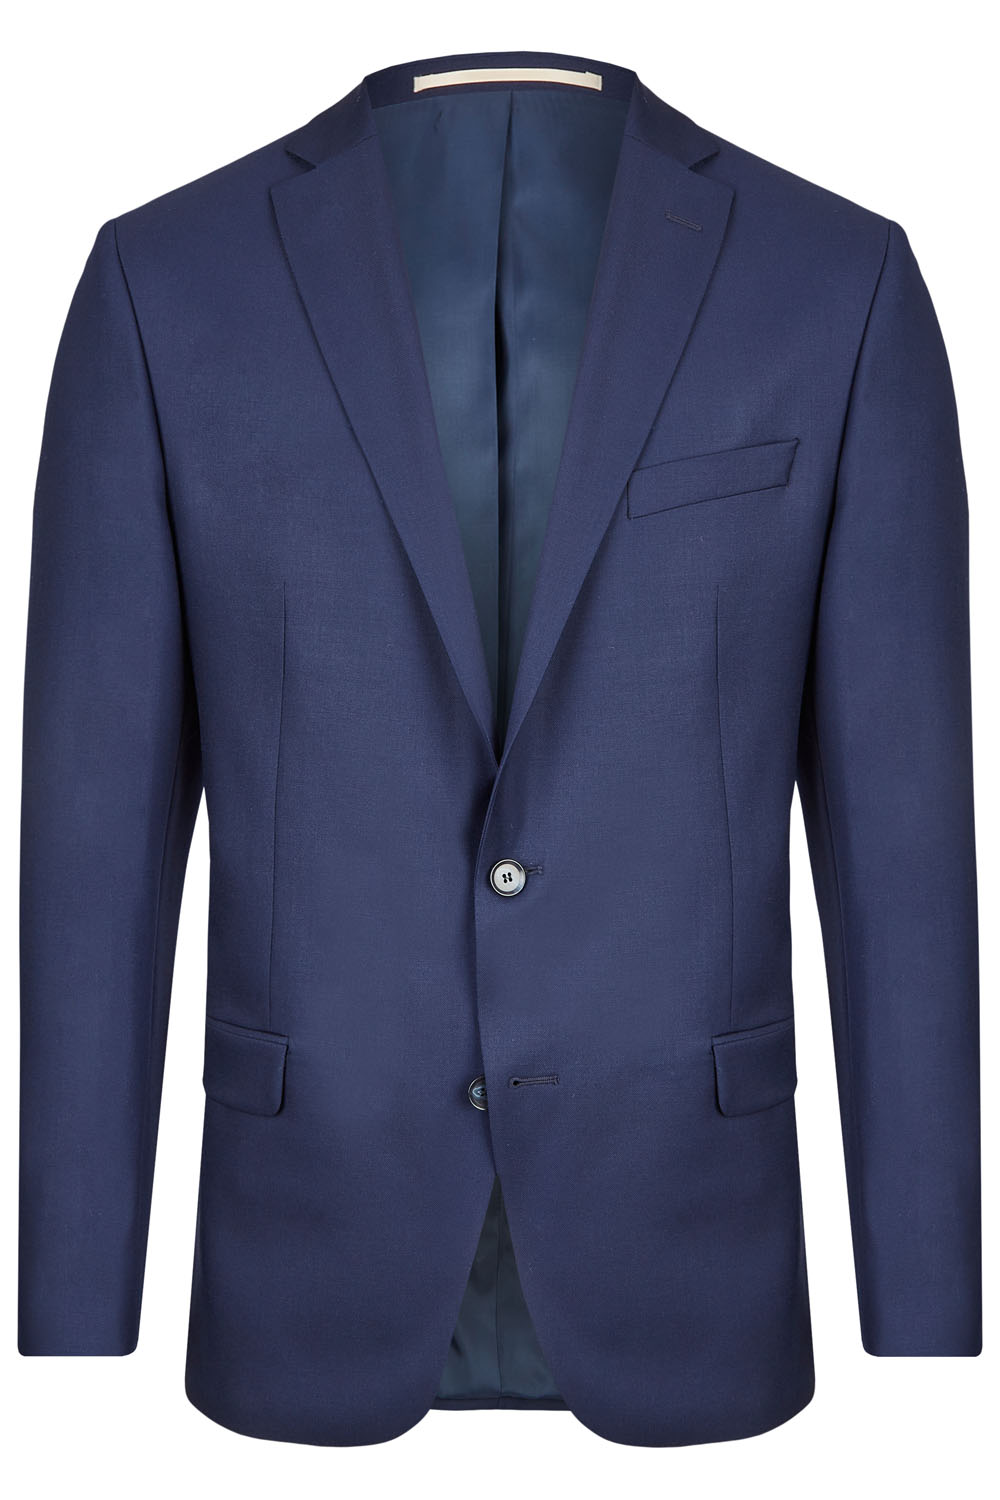 Royal Blue 2 Piece Suit